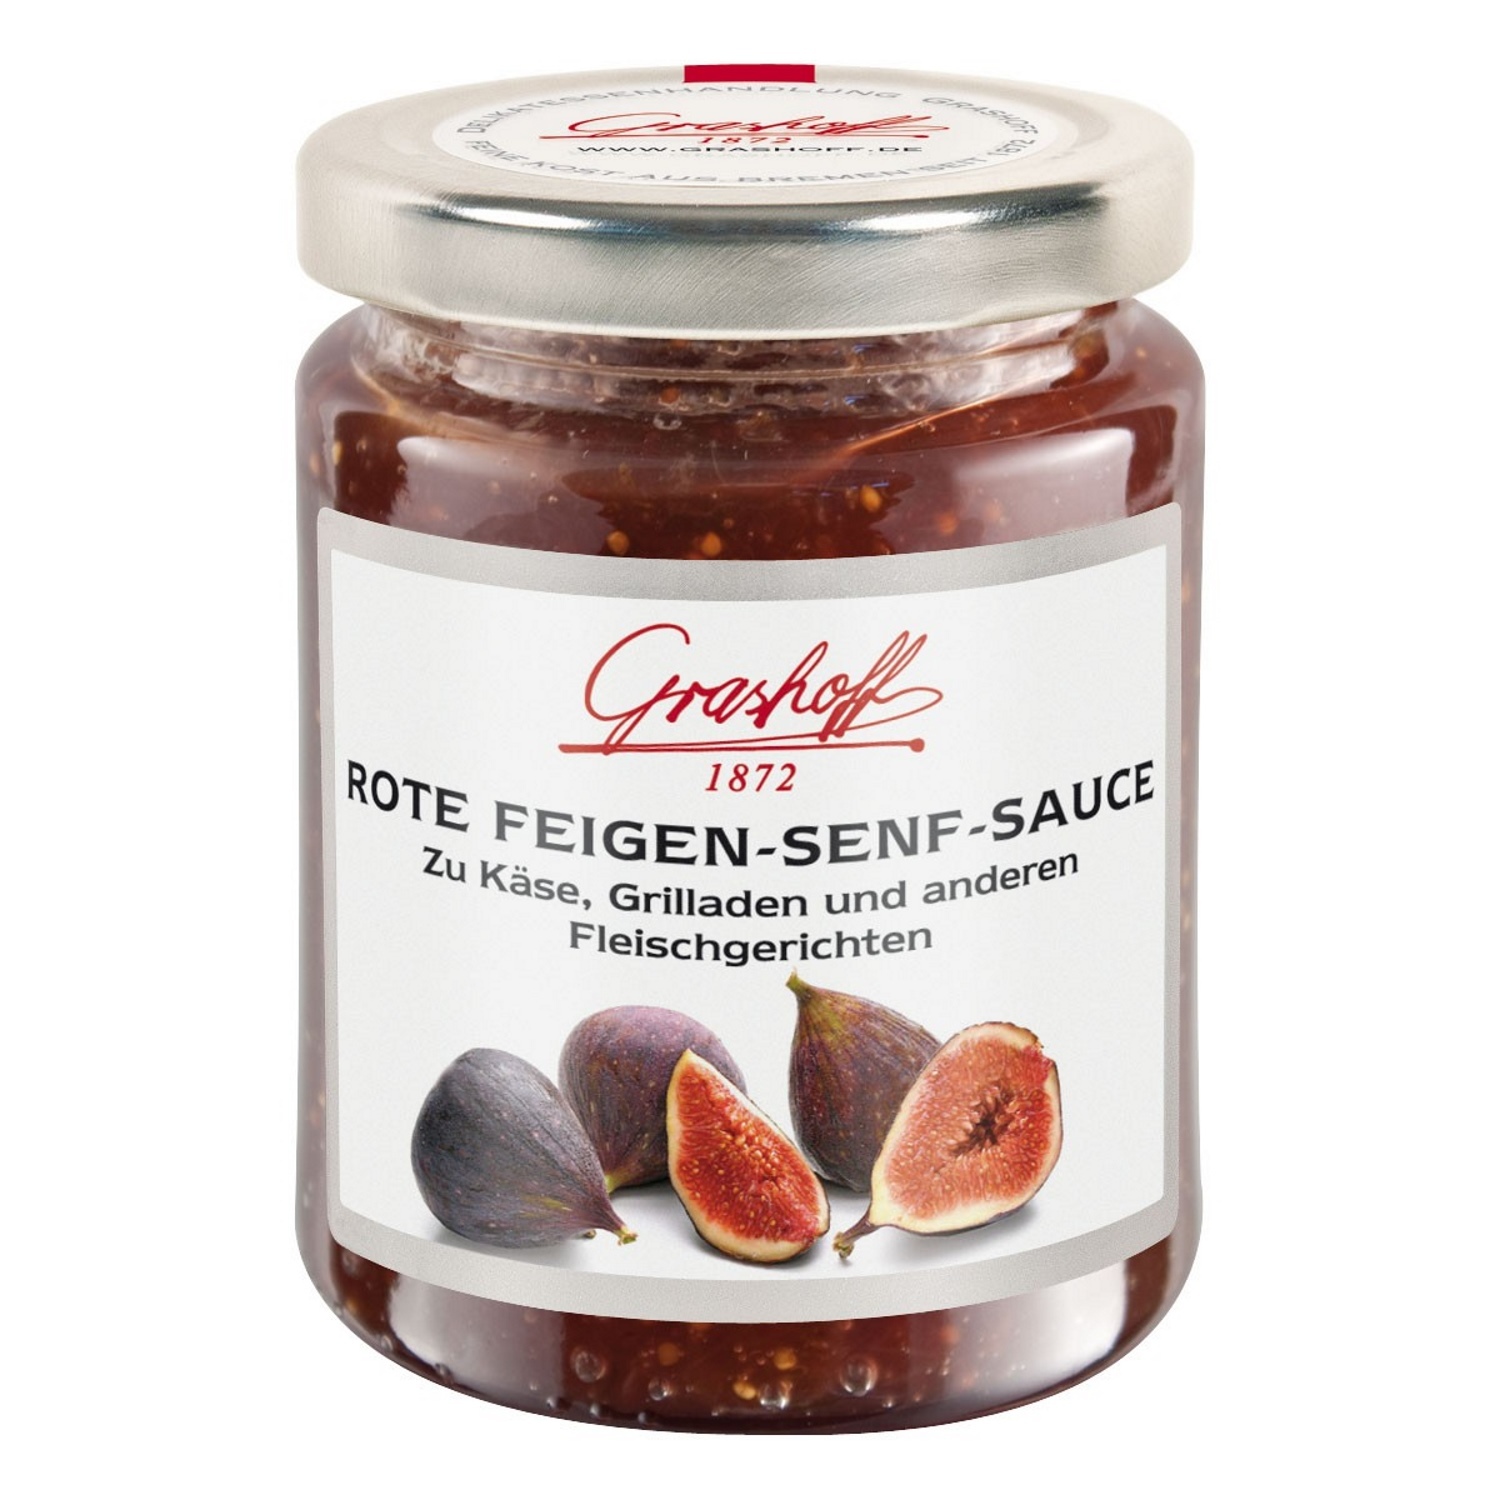 Rote Feigen-Senf-Sauce 125 gr. - Grashoff 1872